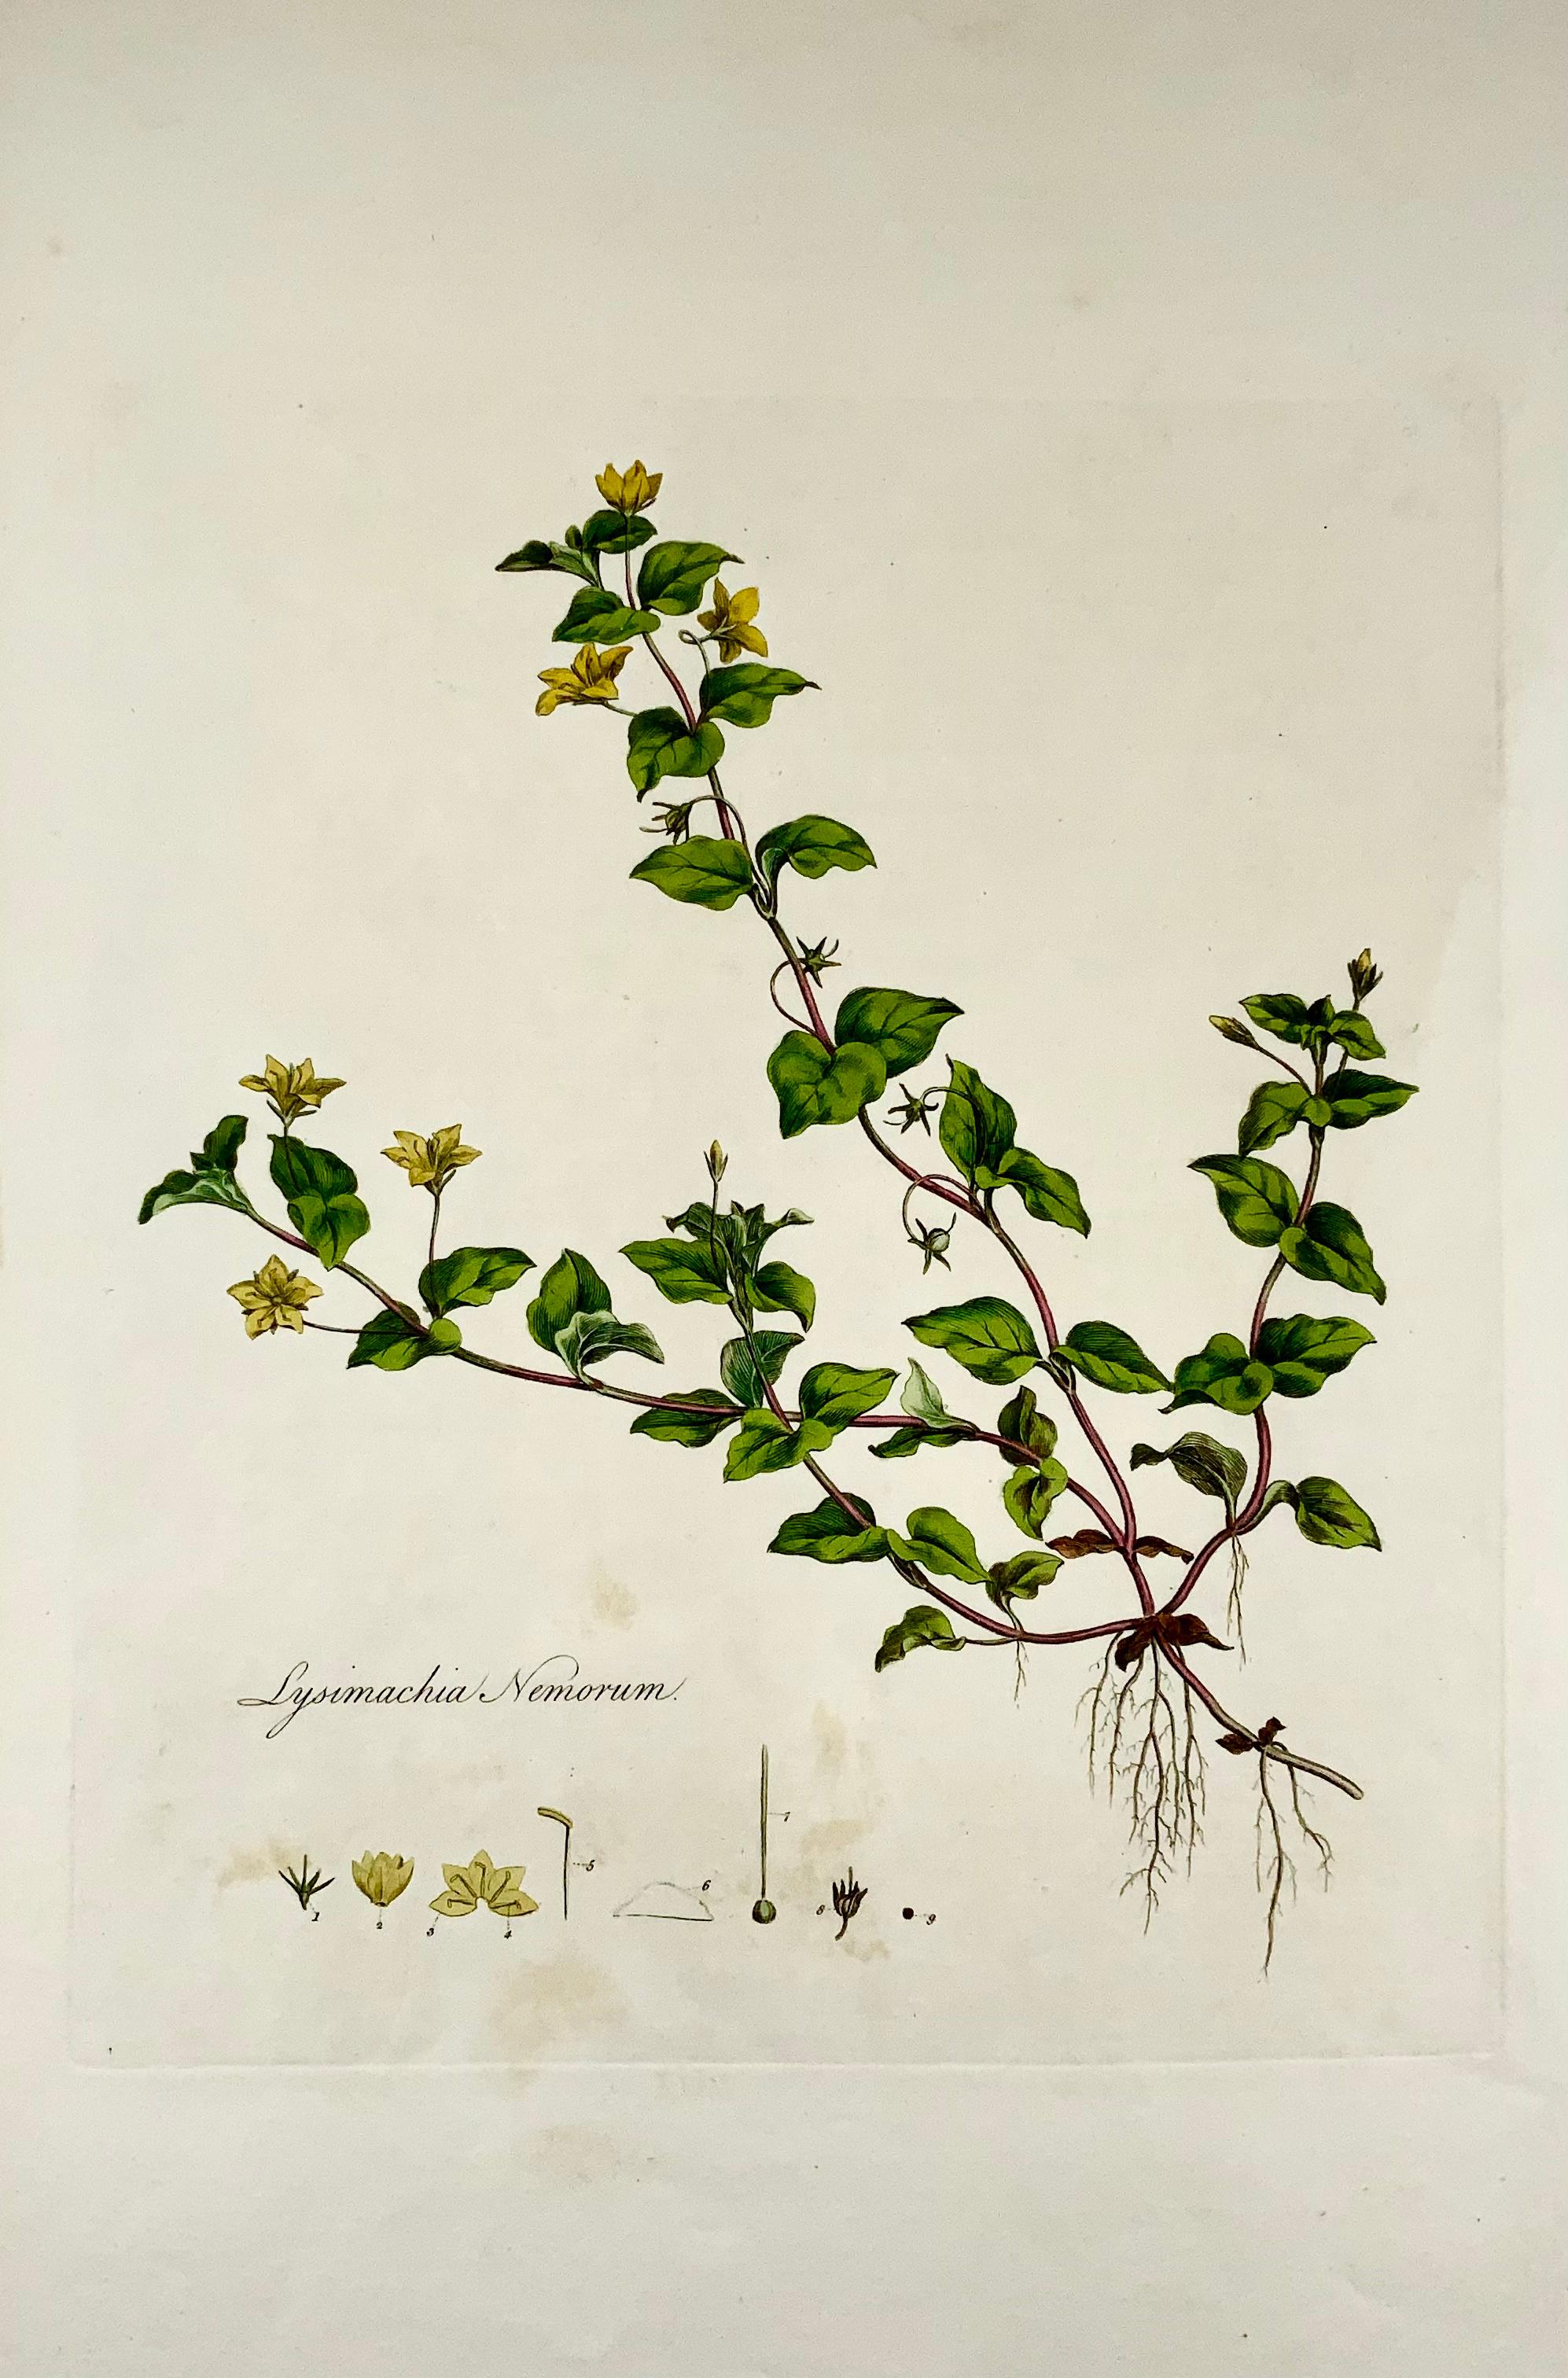 Lysimachia nemorum, le Pimpernel jaune, est une plante à fleurs vivace de la famille des Primulaceae.

Grand folio : 42,7 x 27,5 cm
Gravure sur cuivre, colorée à la main.
Publié vers 1817.
Publié dans la 